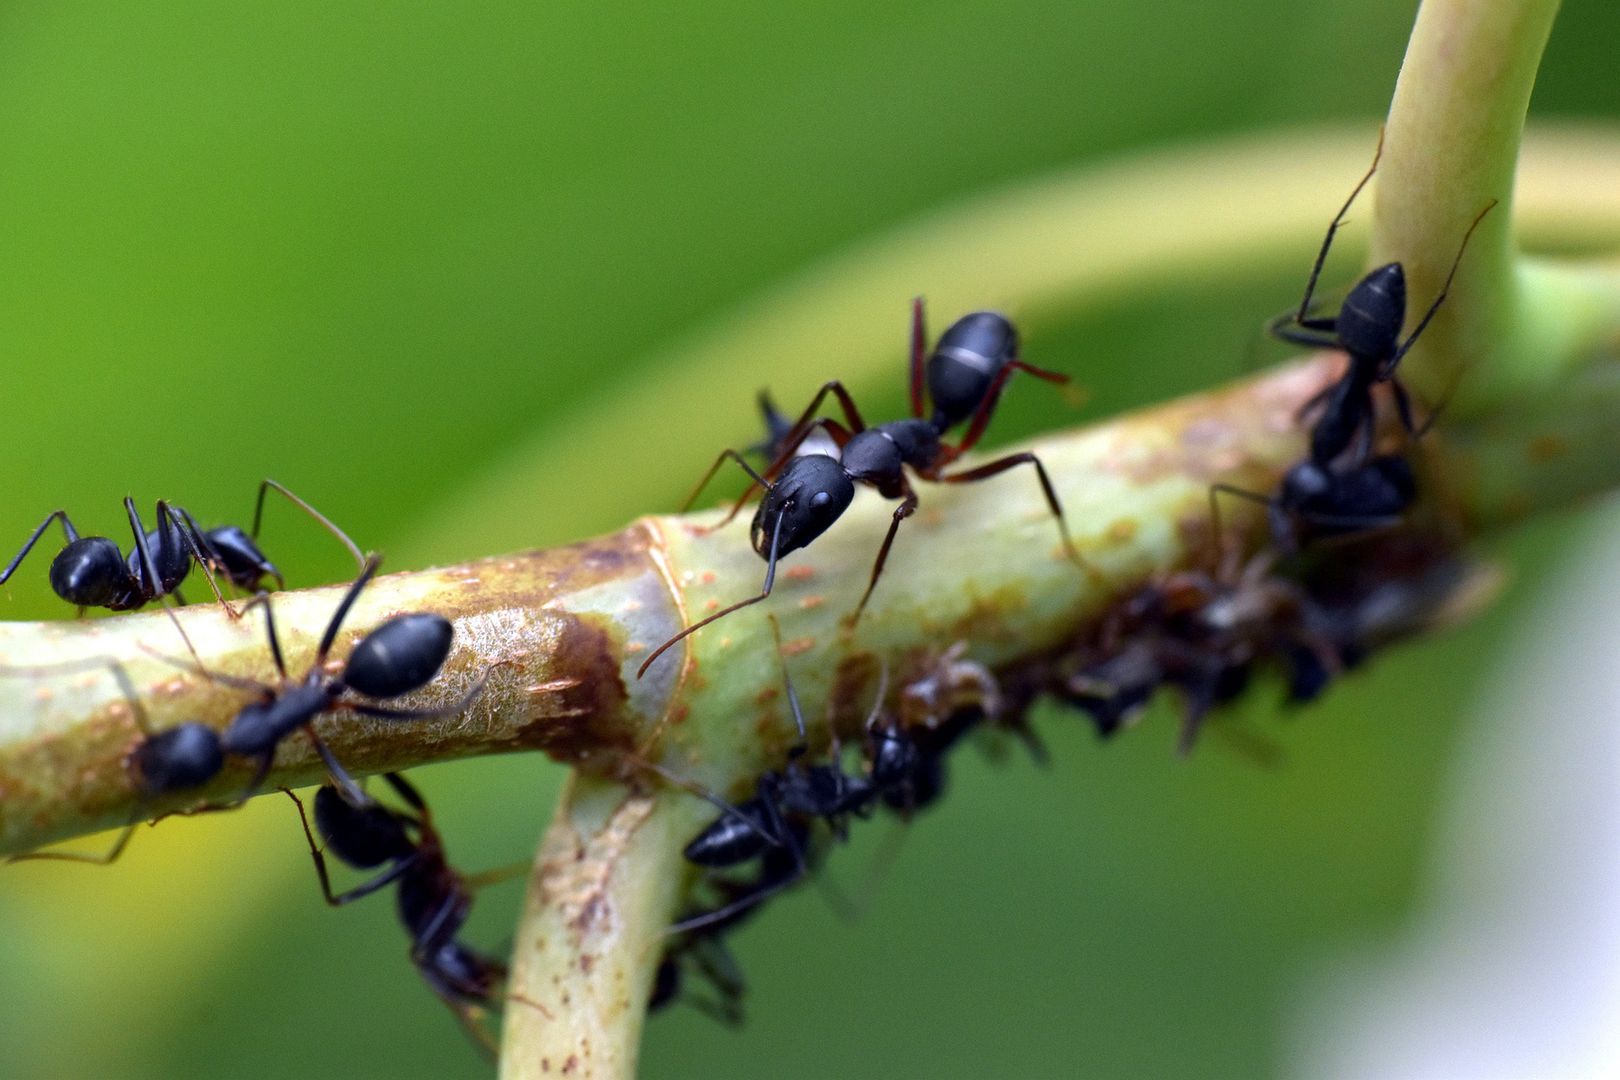 Tyle mrówek żyje na Ziemi. Ważą więcej niż wszyscy ssaki razem wzięte